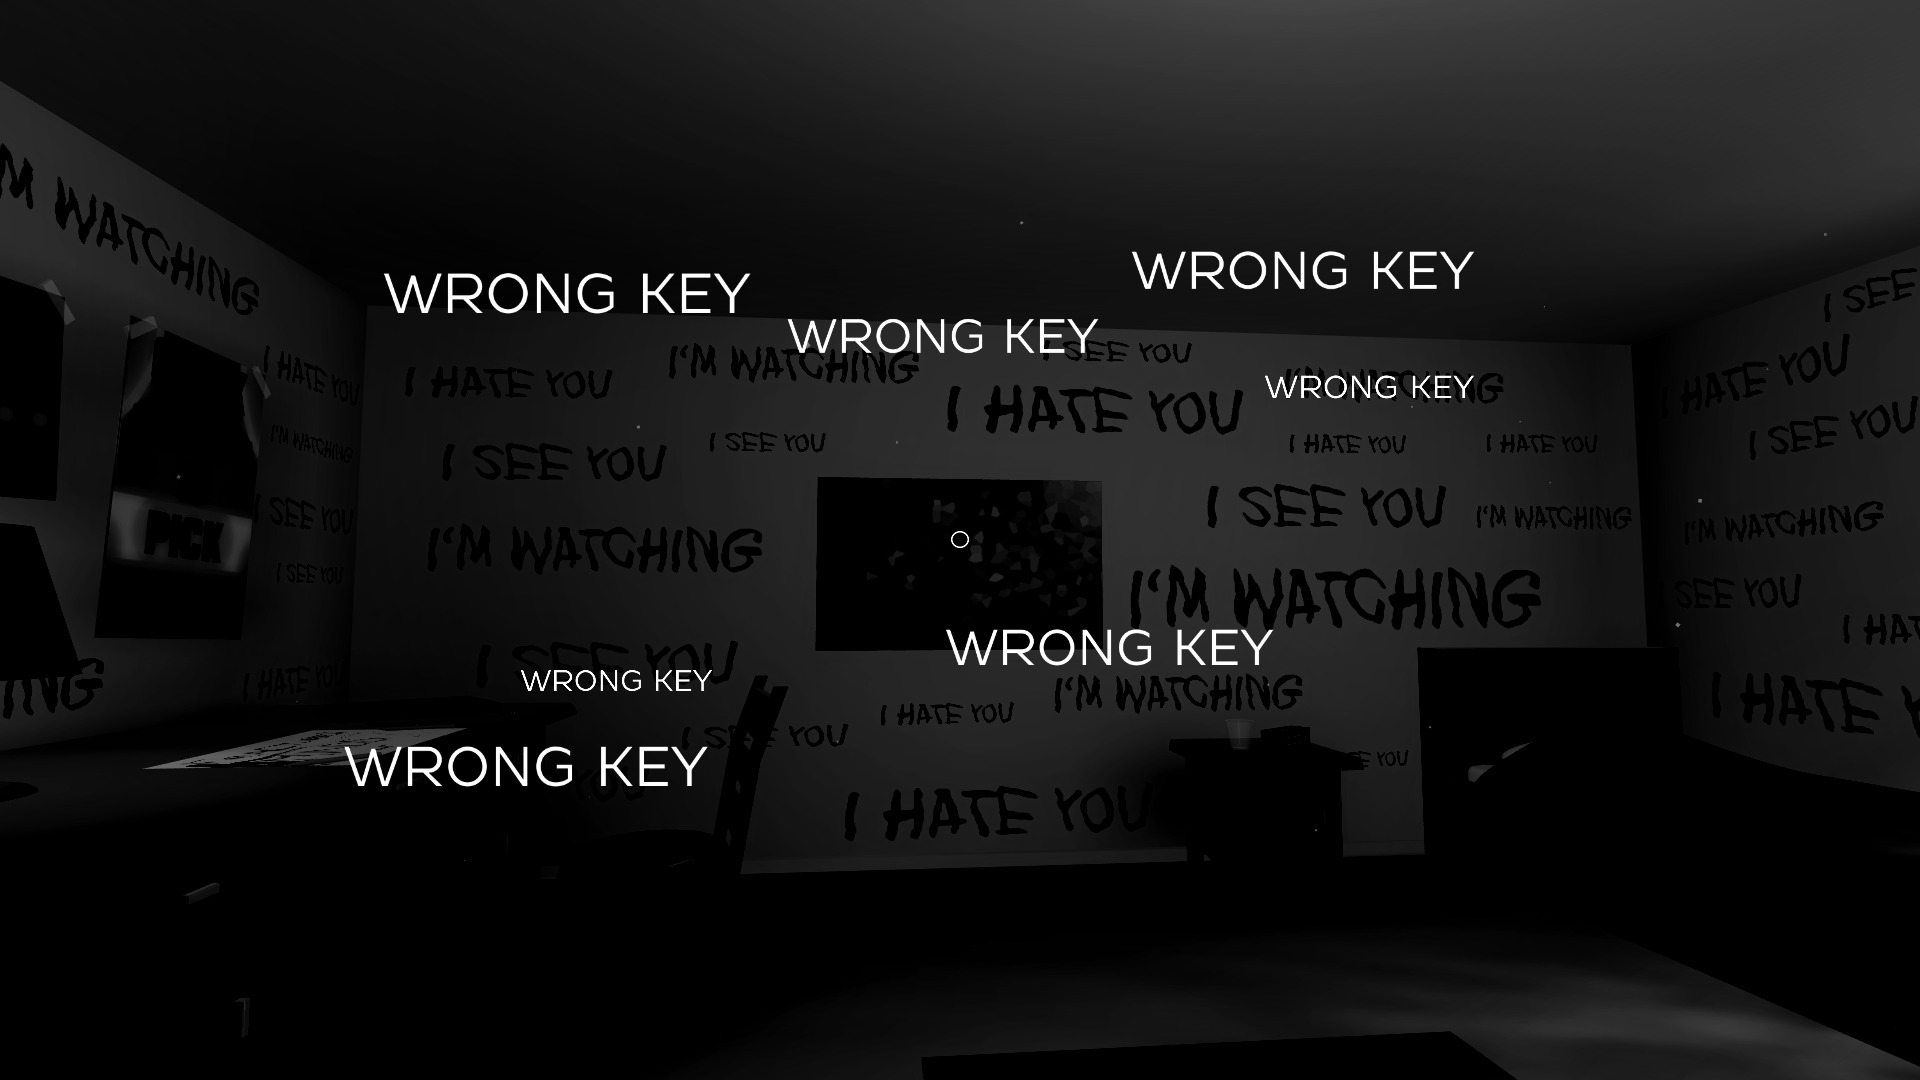 Wrong key wrong key wrong key